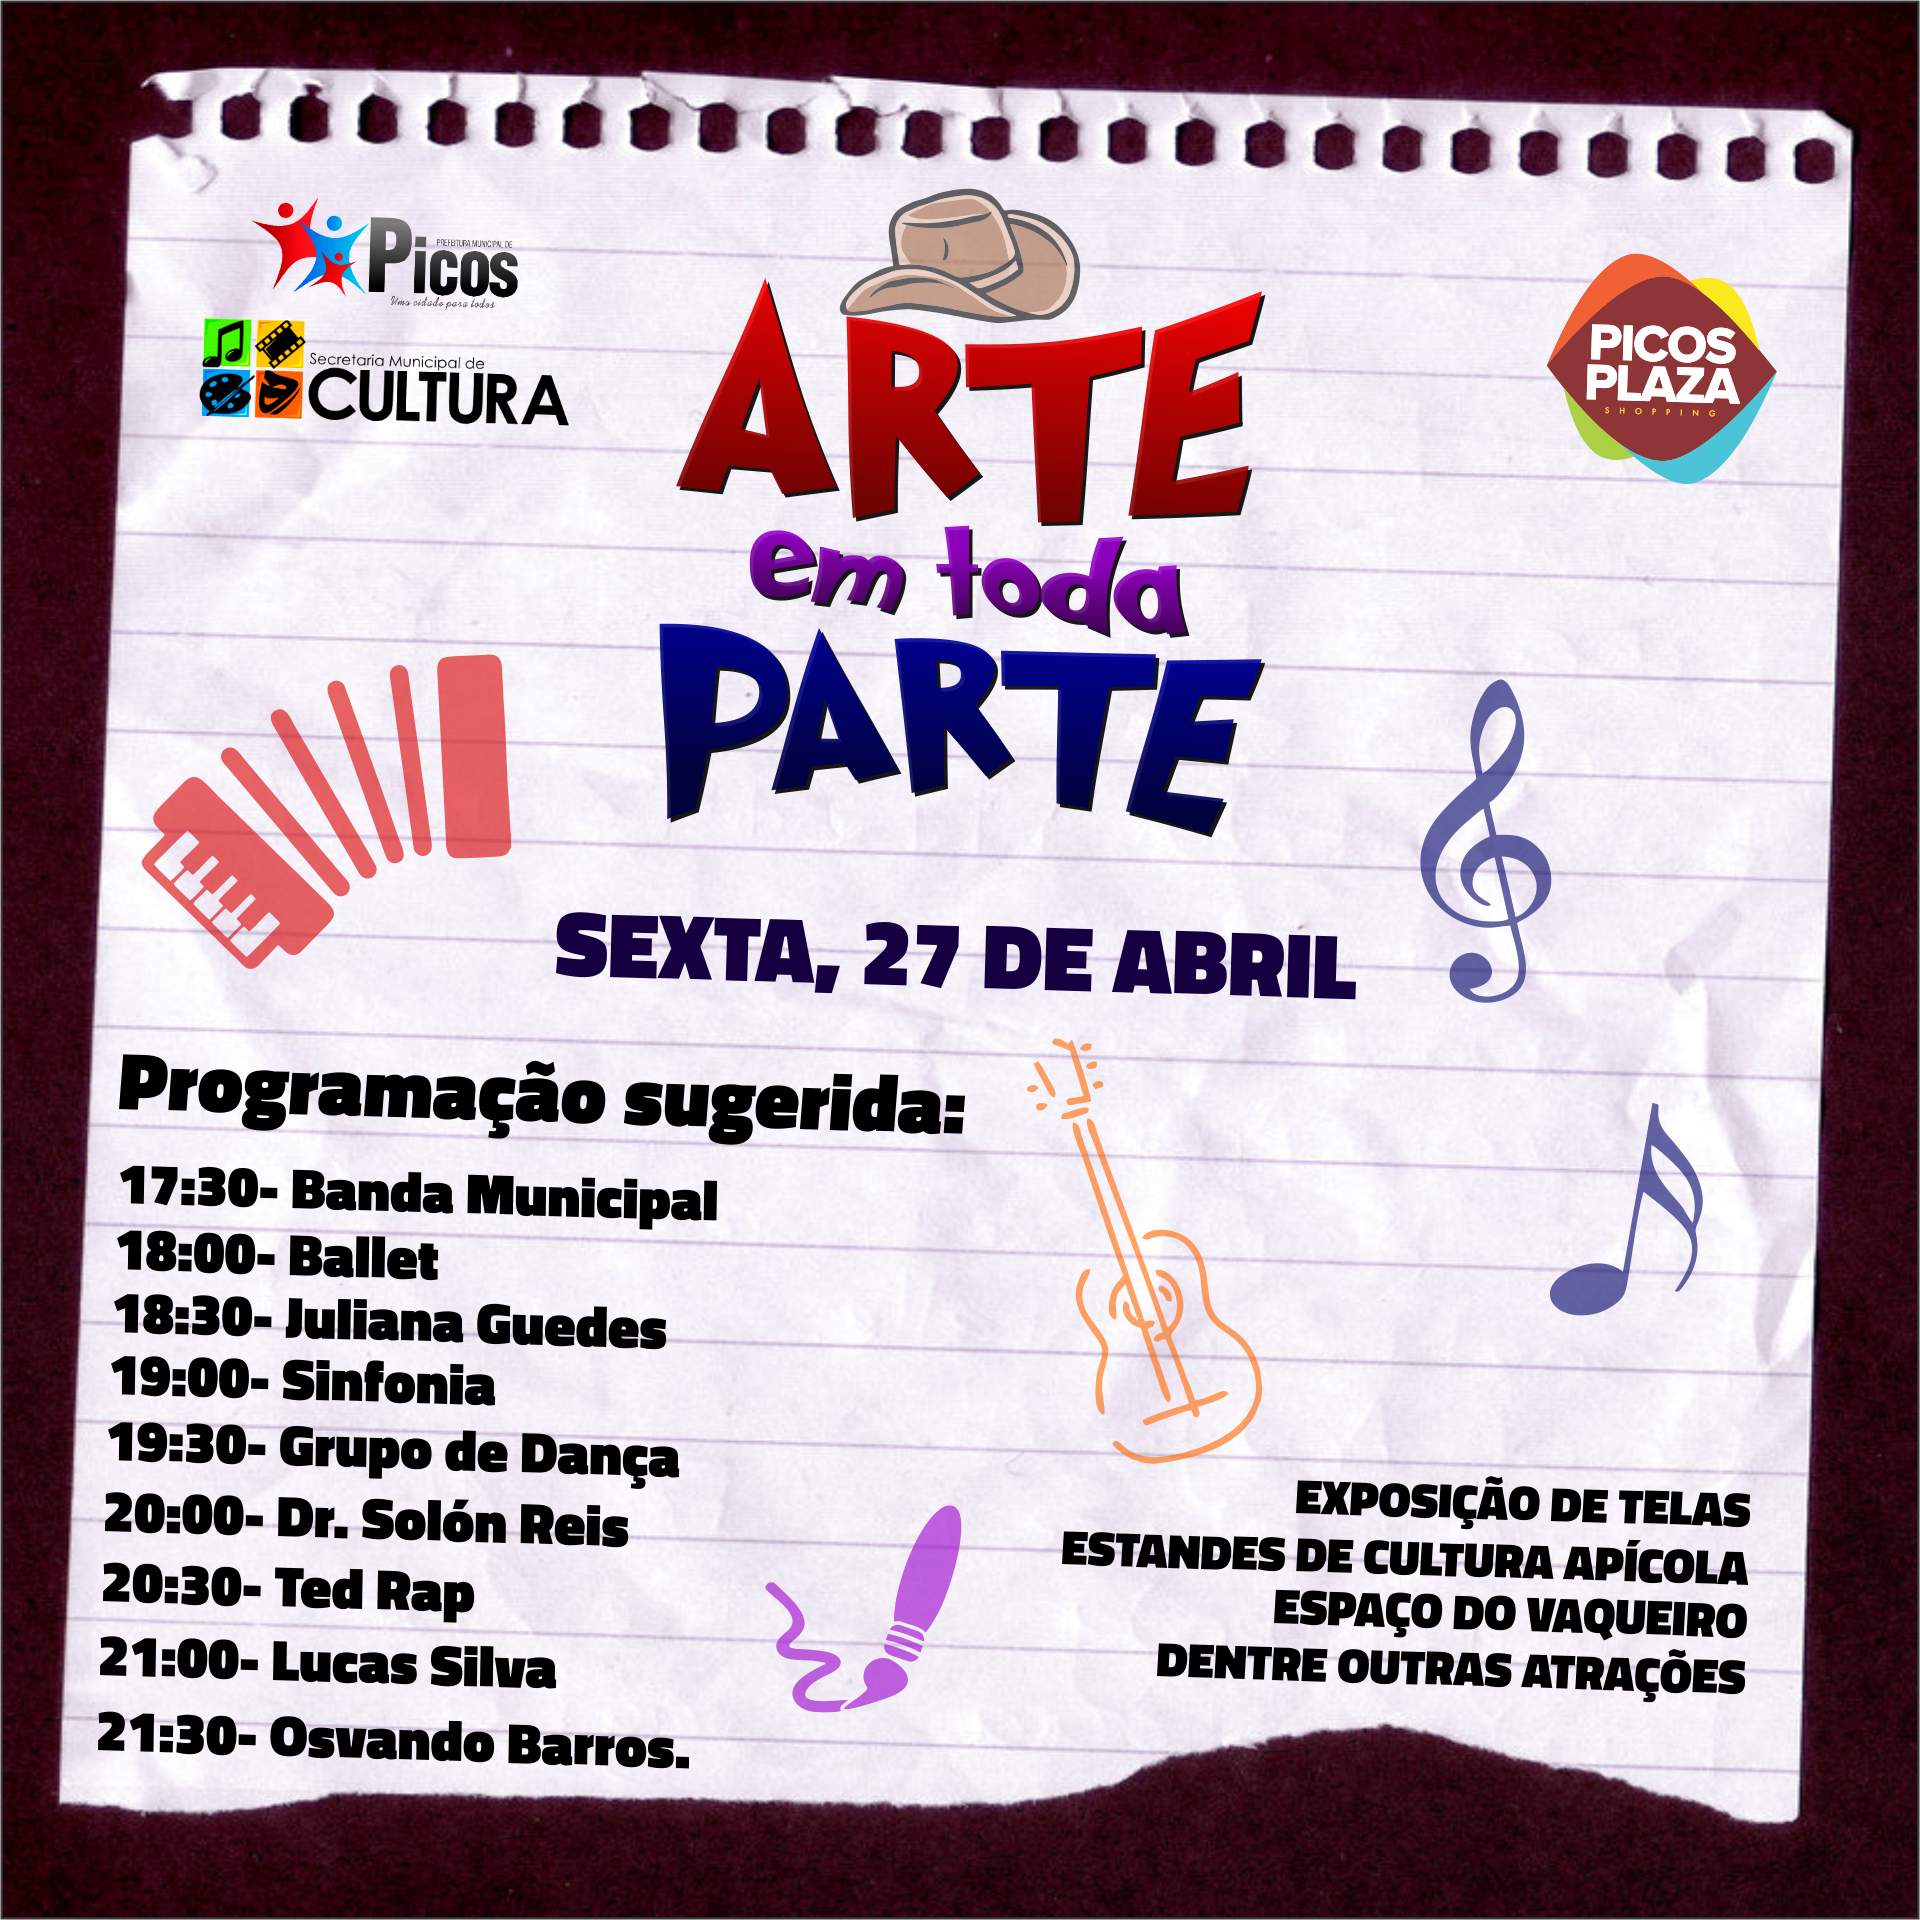 Arte em Toda Parte acontecerá nesta sexta-feira (27) no Picos Plaza Shopping